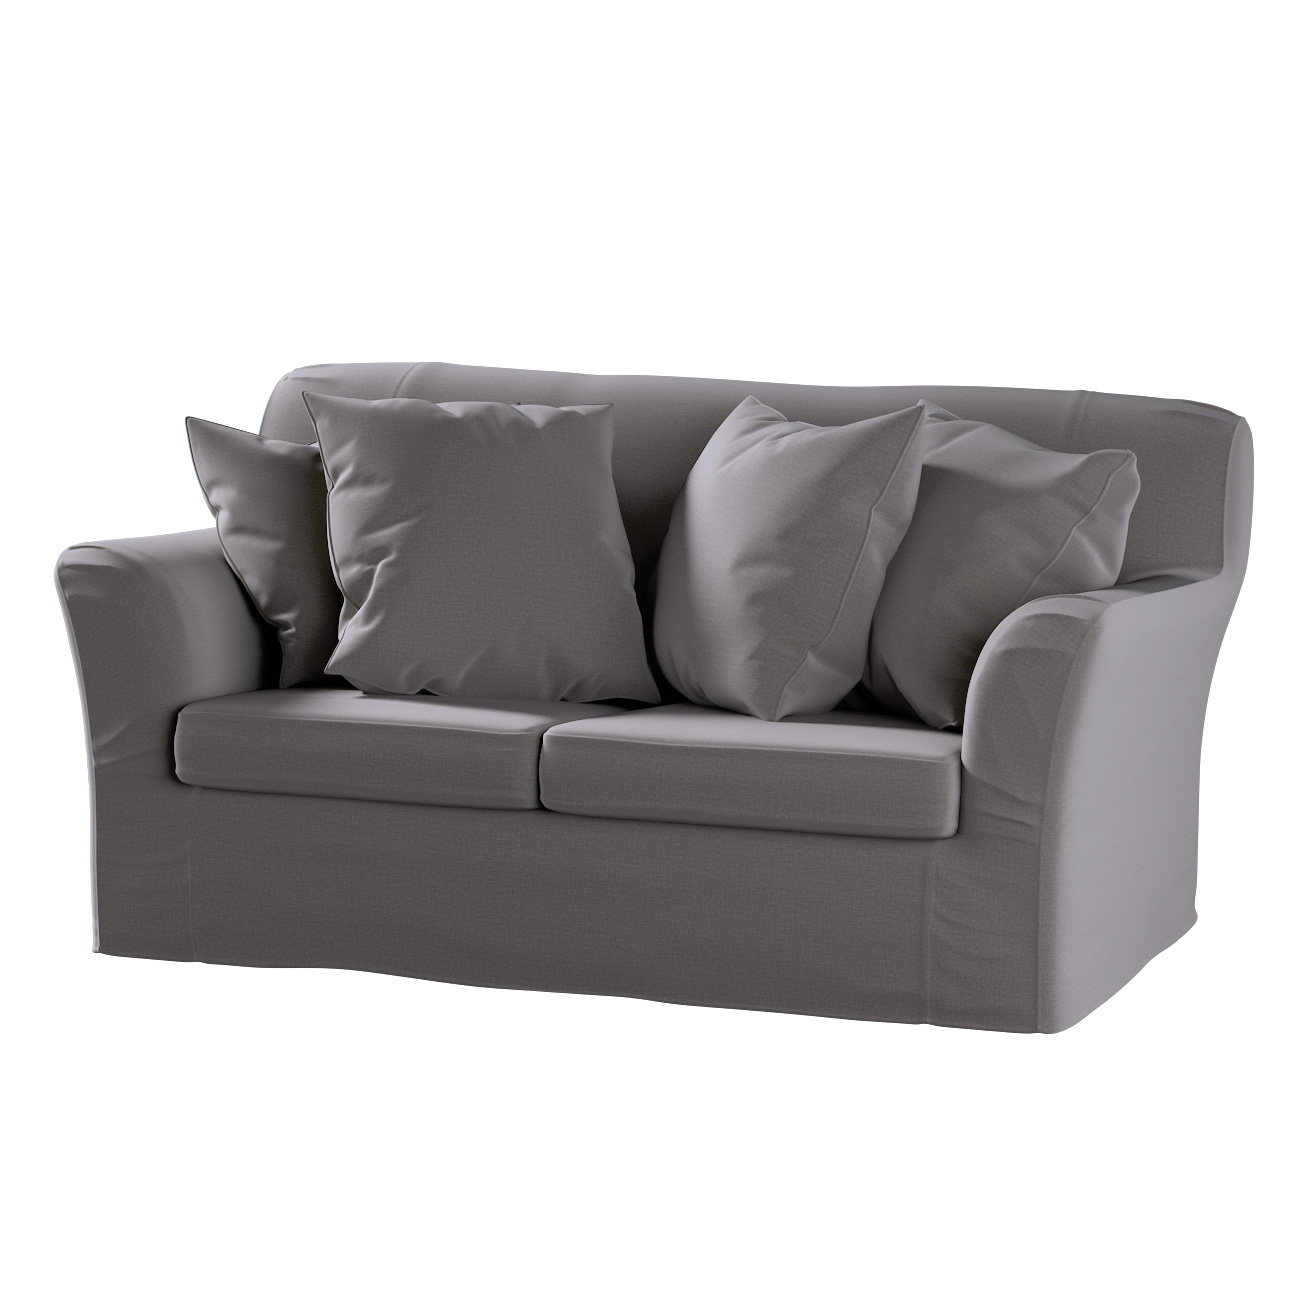 Bezug für Tomelilla 2-Sitzer Sofa nicht ausklappbar, braun, Sofahusse, Tome günstig online kaufen